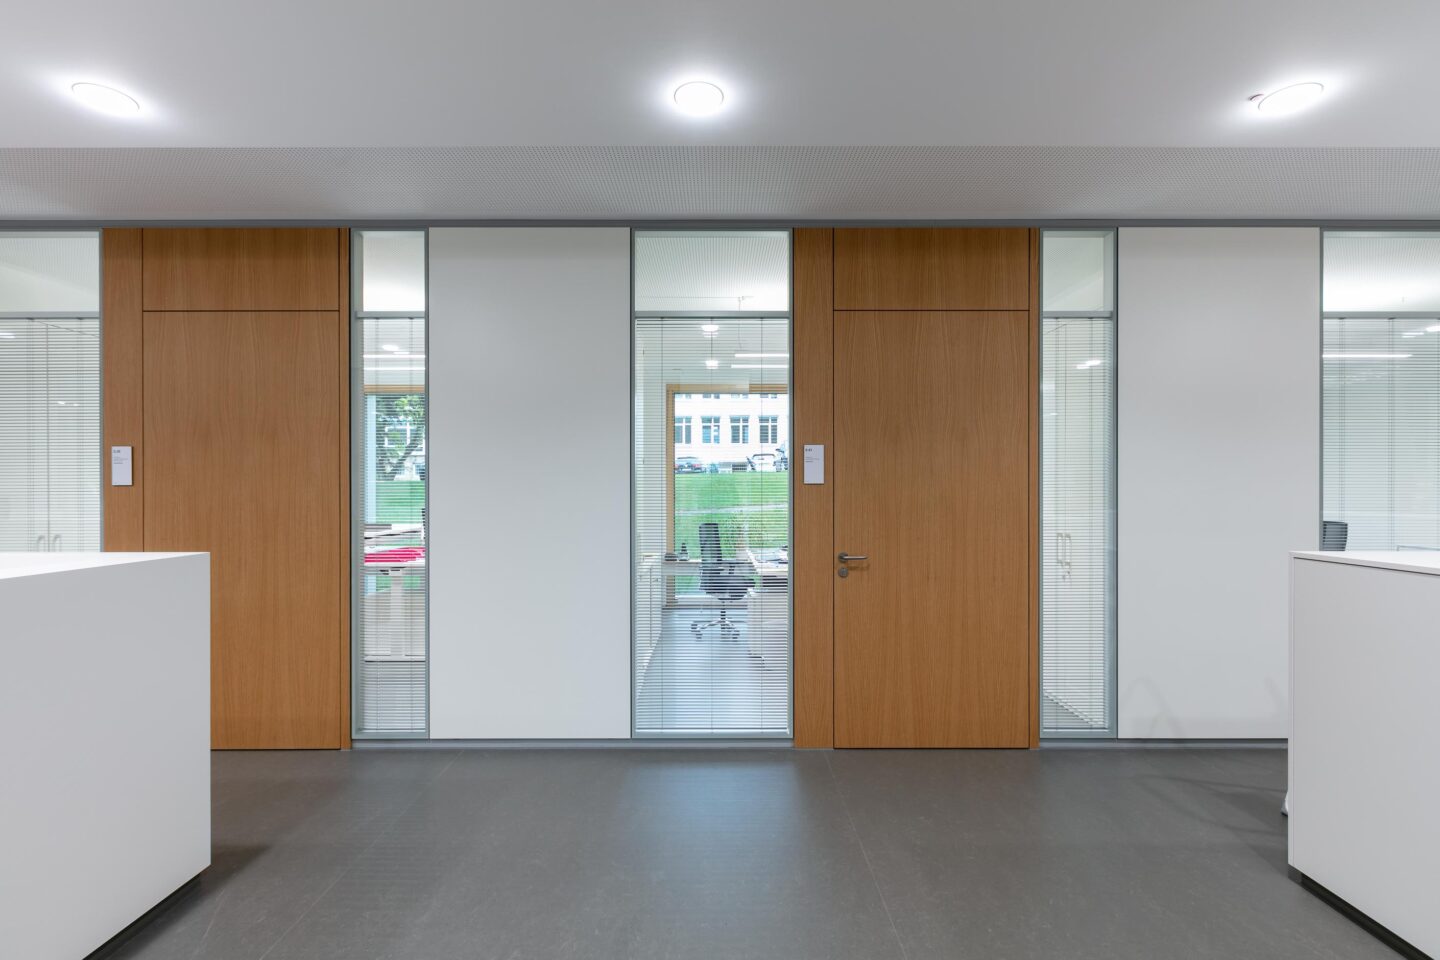 Bischof-Leiprecht-Zentrum Stuttgart │ fecotür H70 wooden doors flush with the floor │ modern workplaces